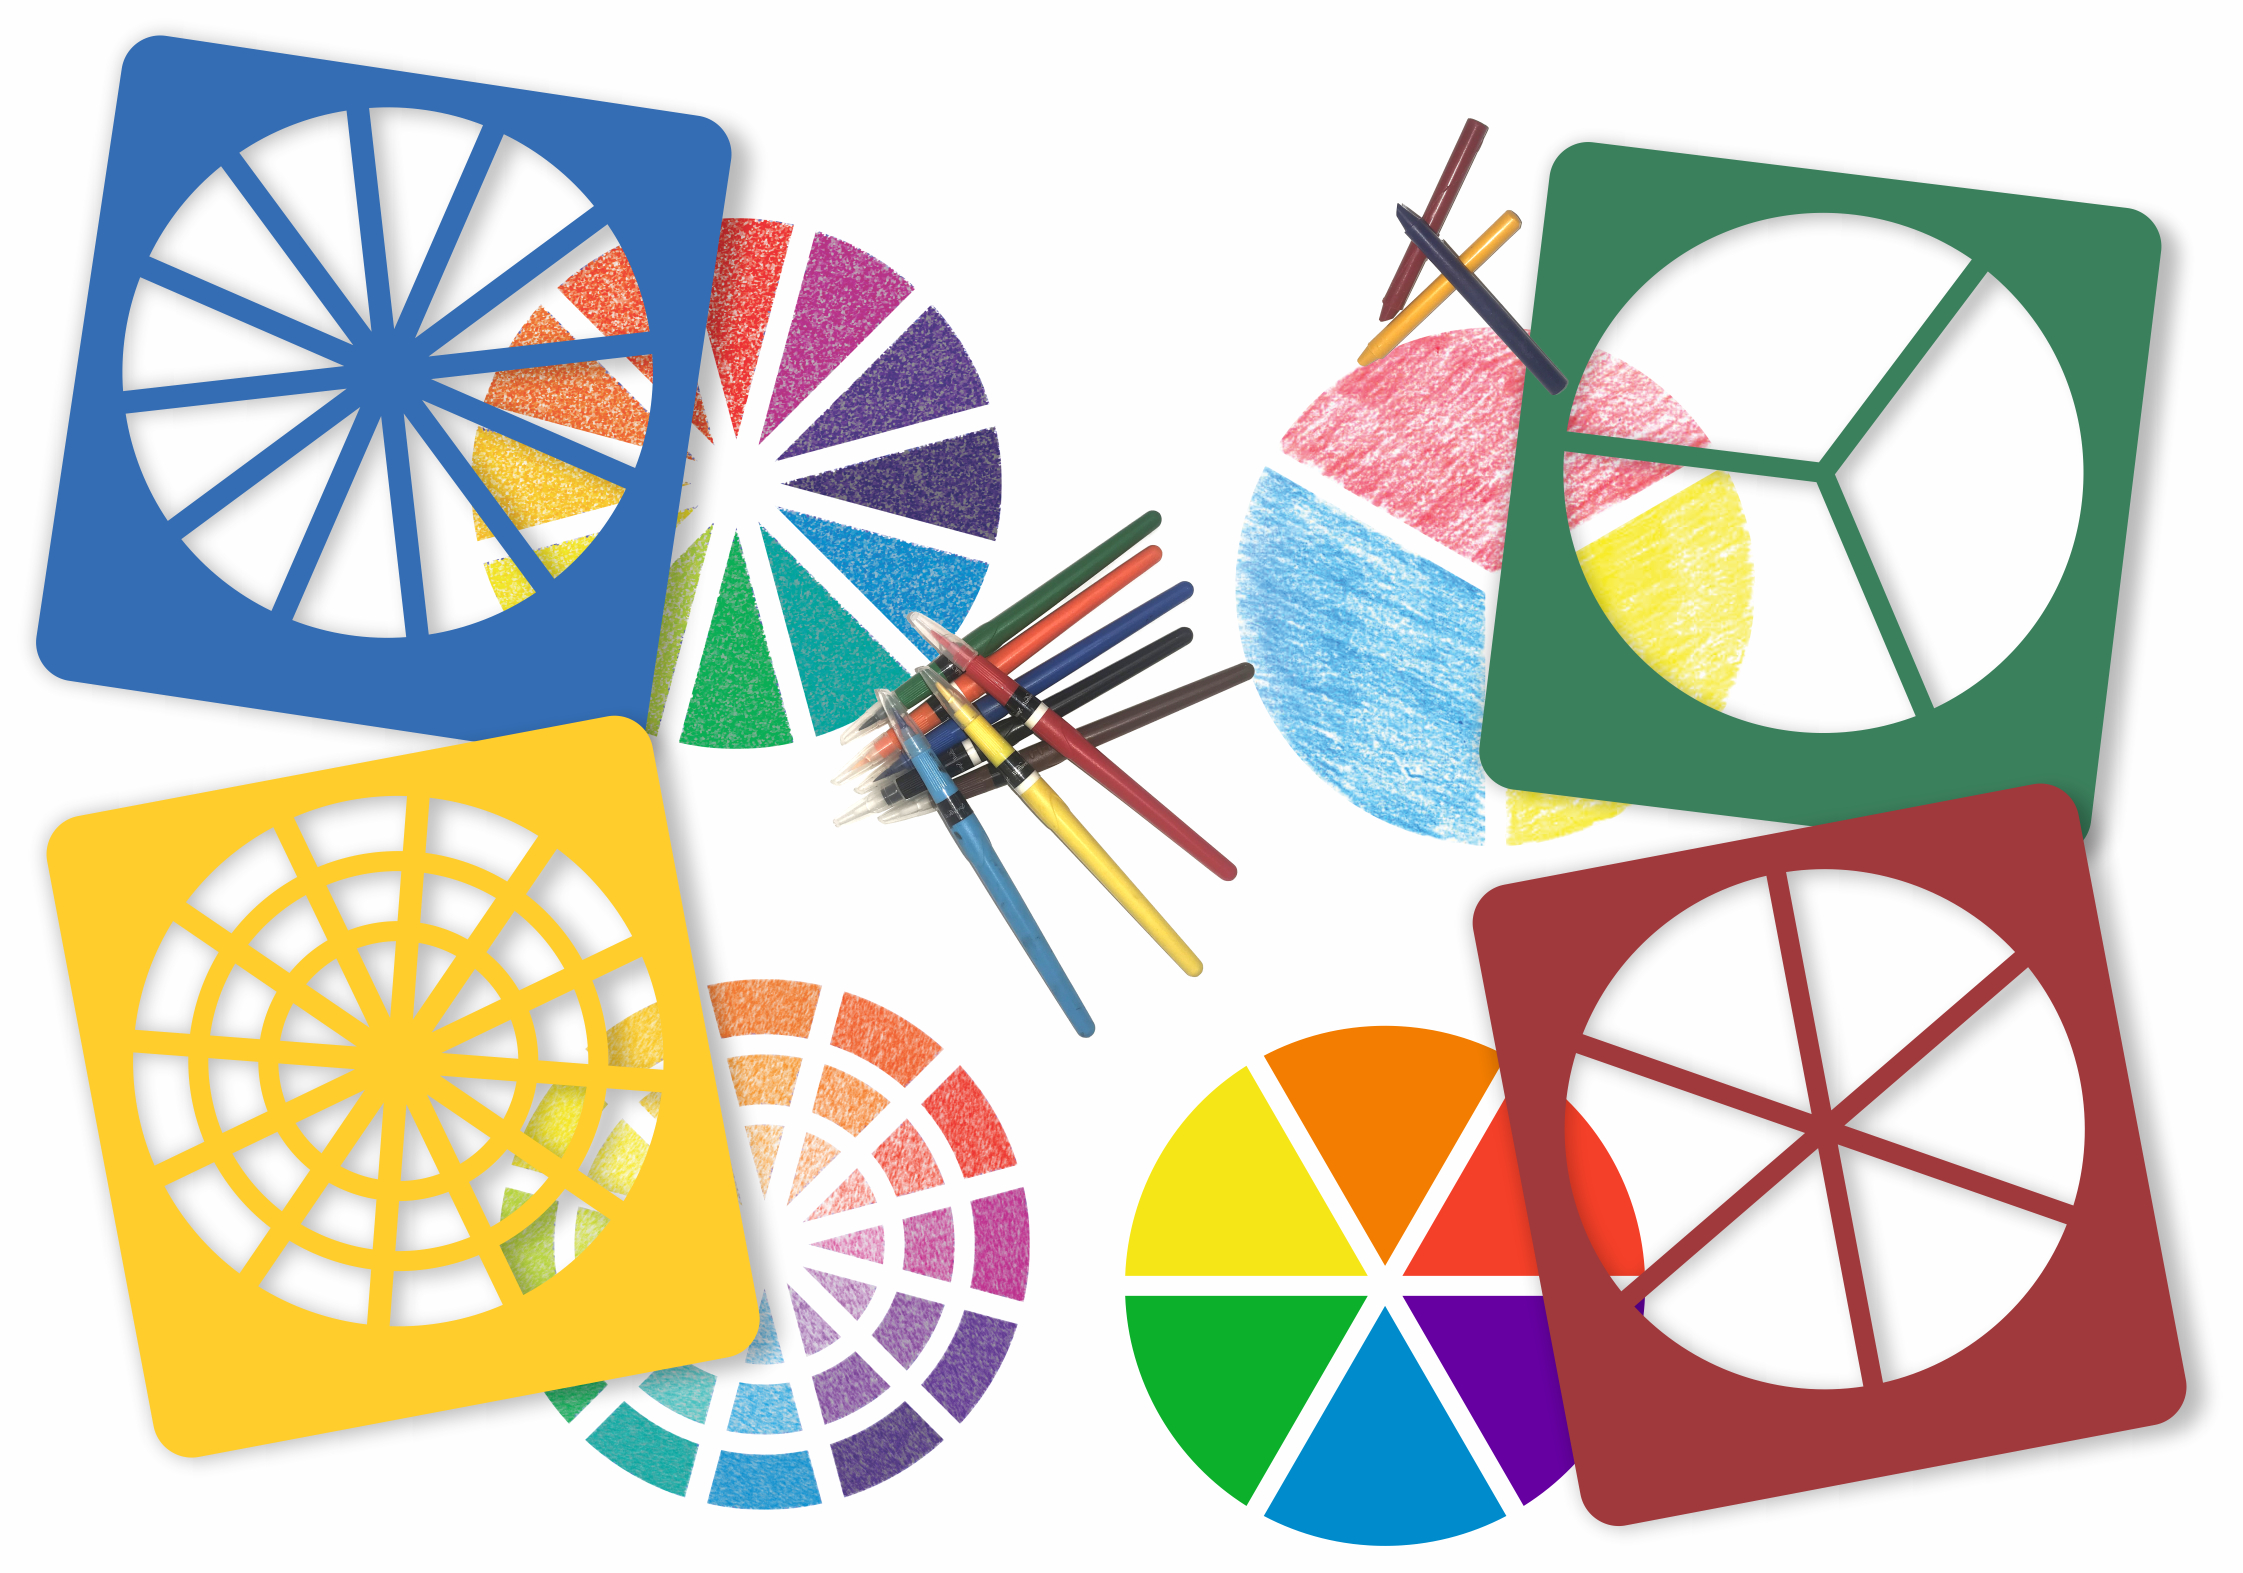 complex color wheel